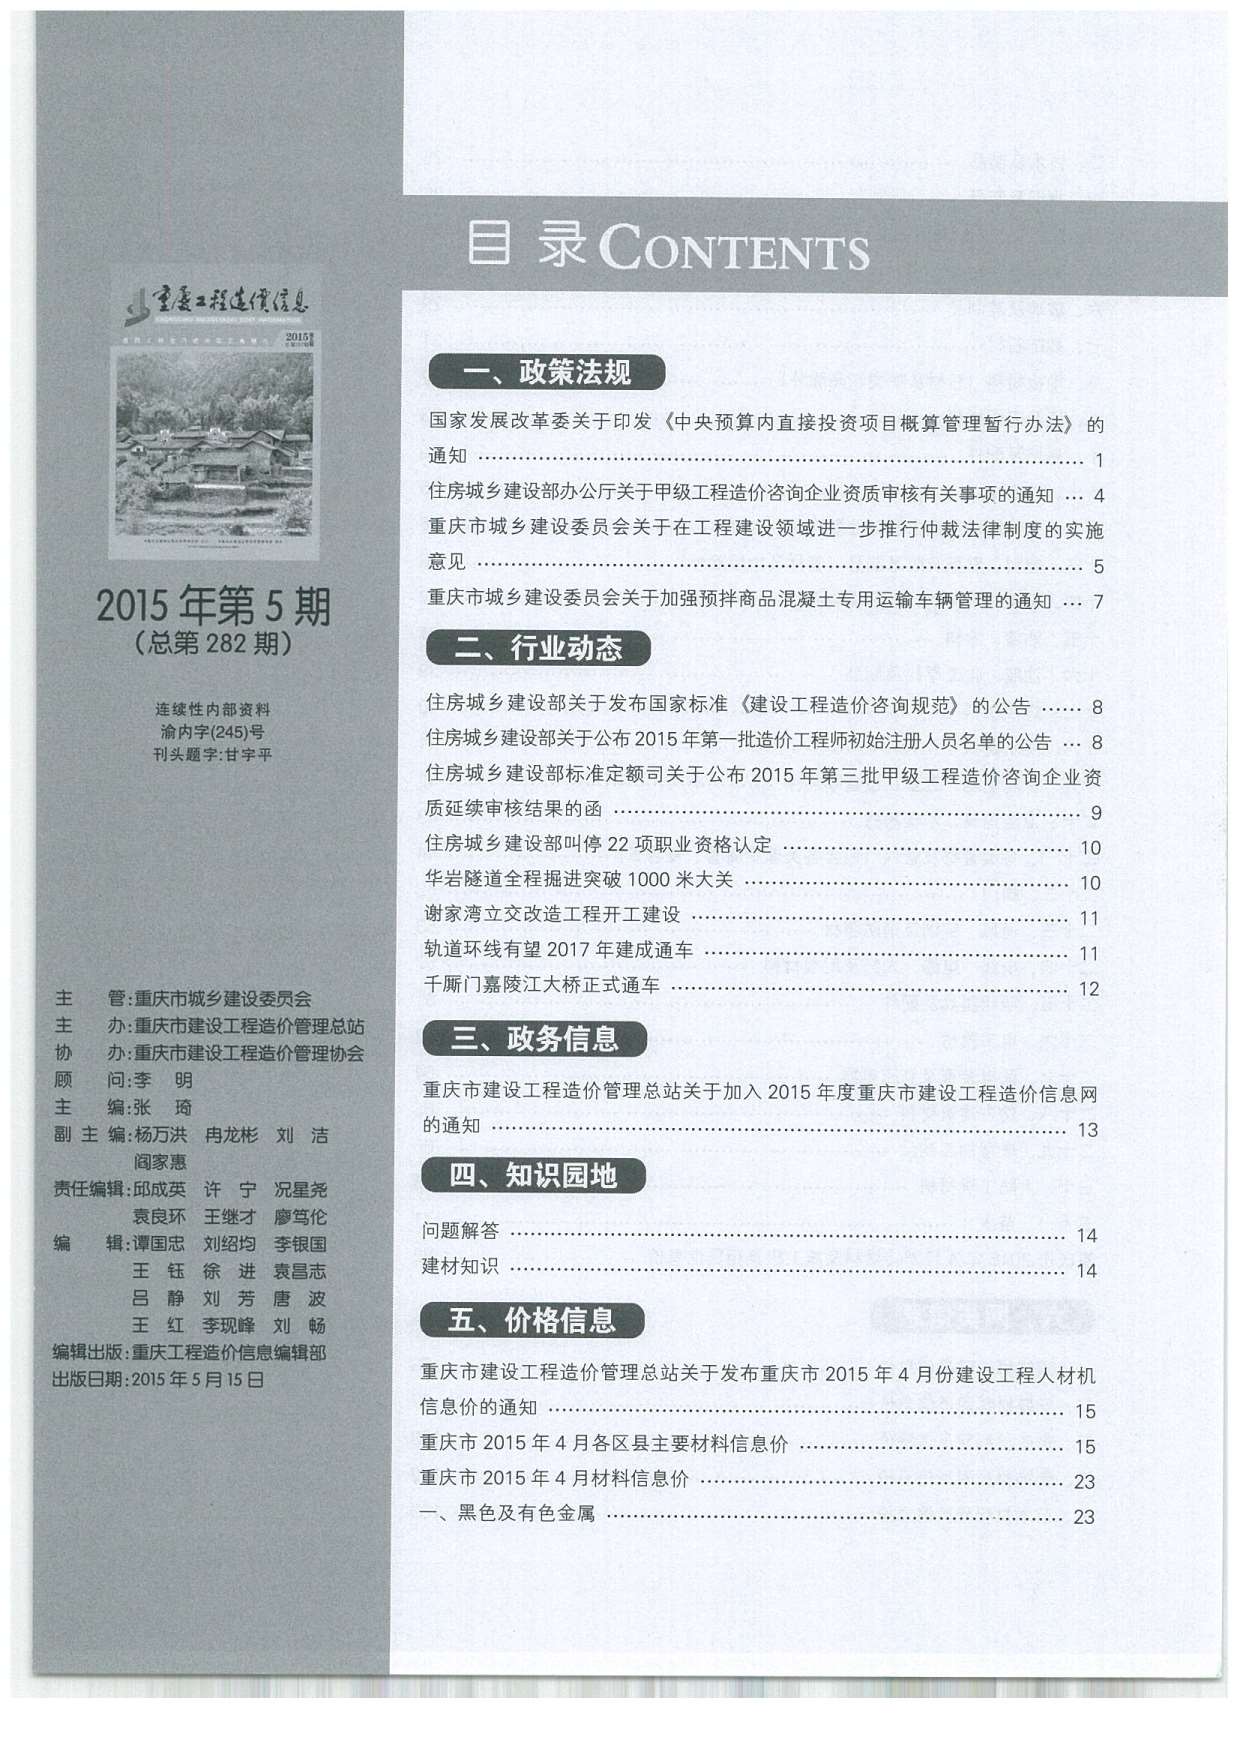 重庆市2015年5月工程造价信息造价库信息价